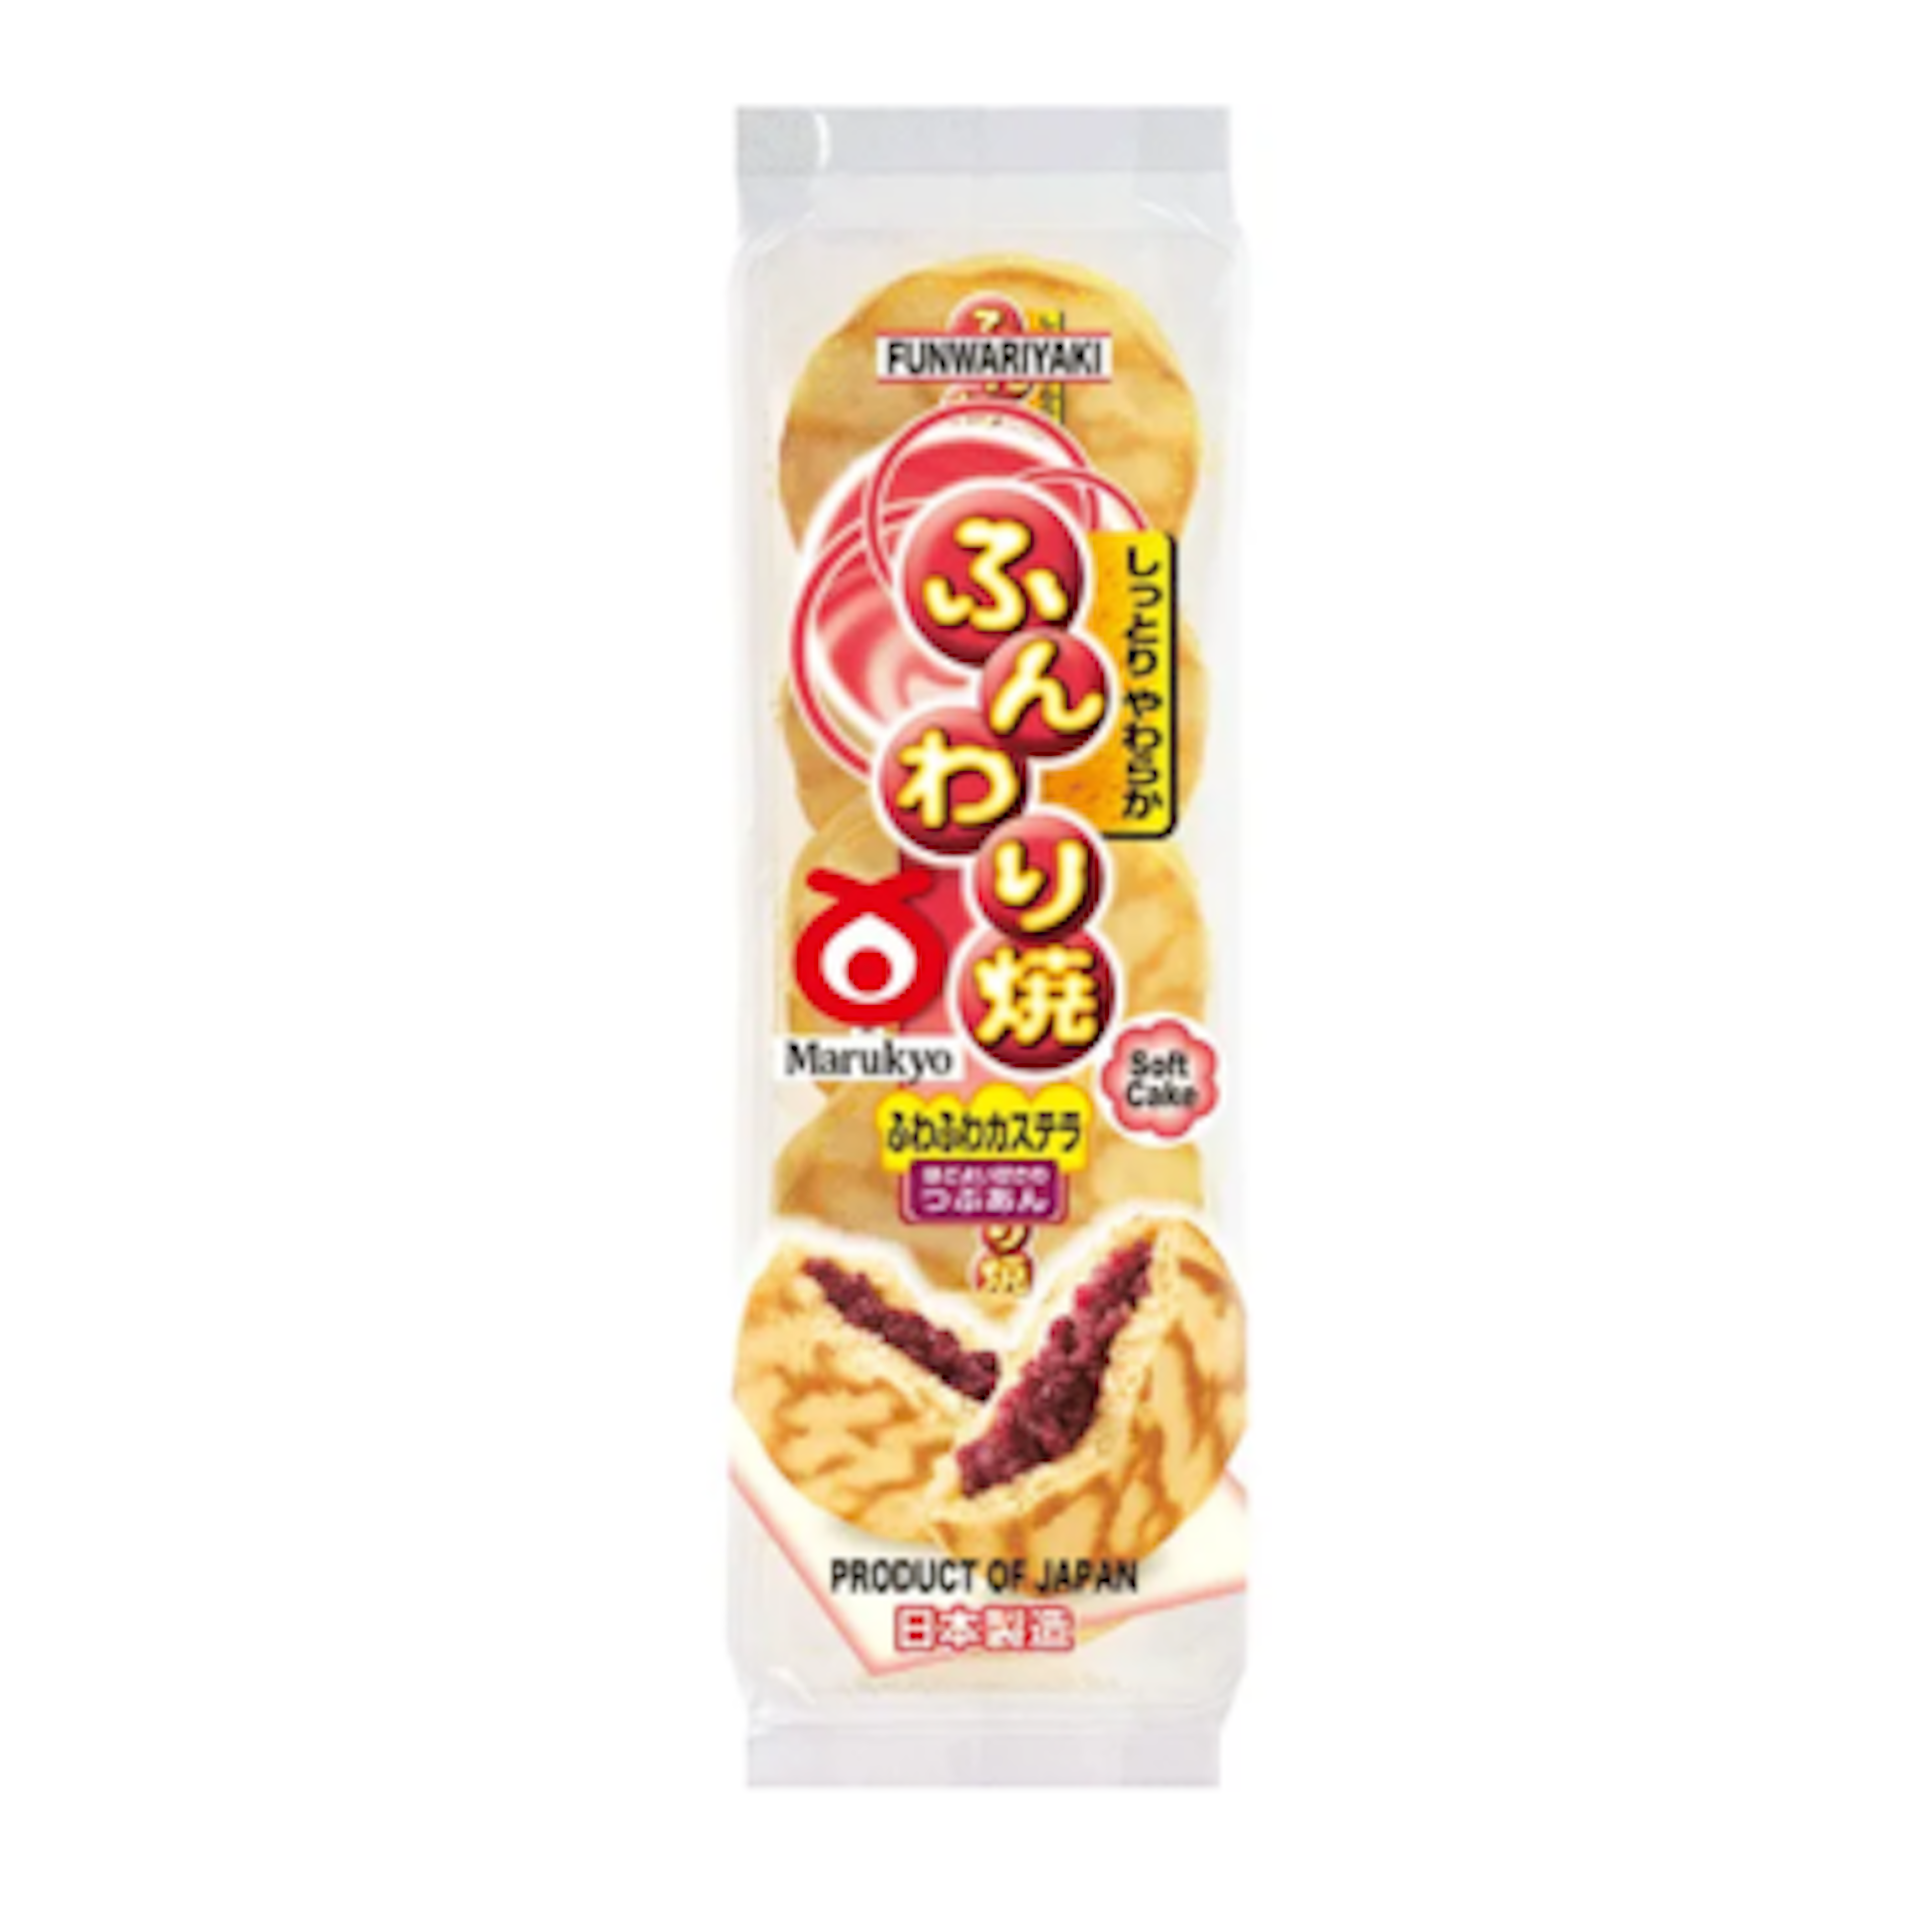 Marukyo Funwariyaki Dorayaki - Japanische Pfannkuchen mit süßer Bohnenpaste, 5er Pack 280g